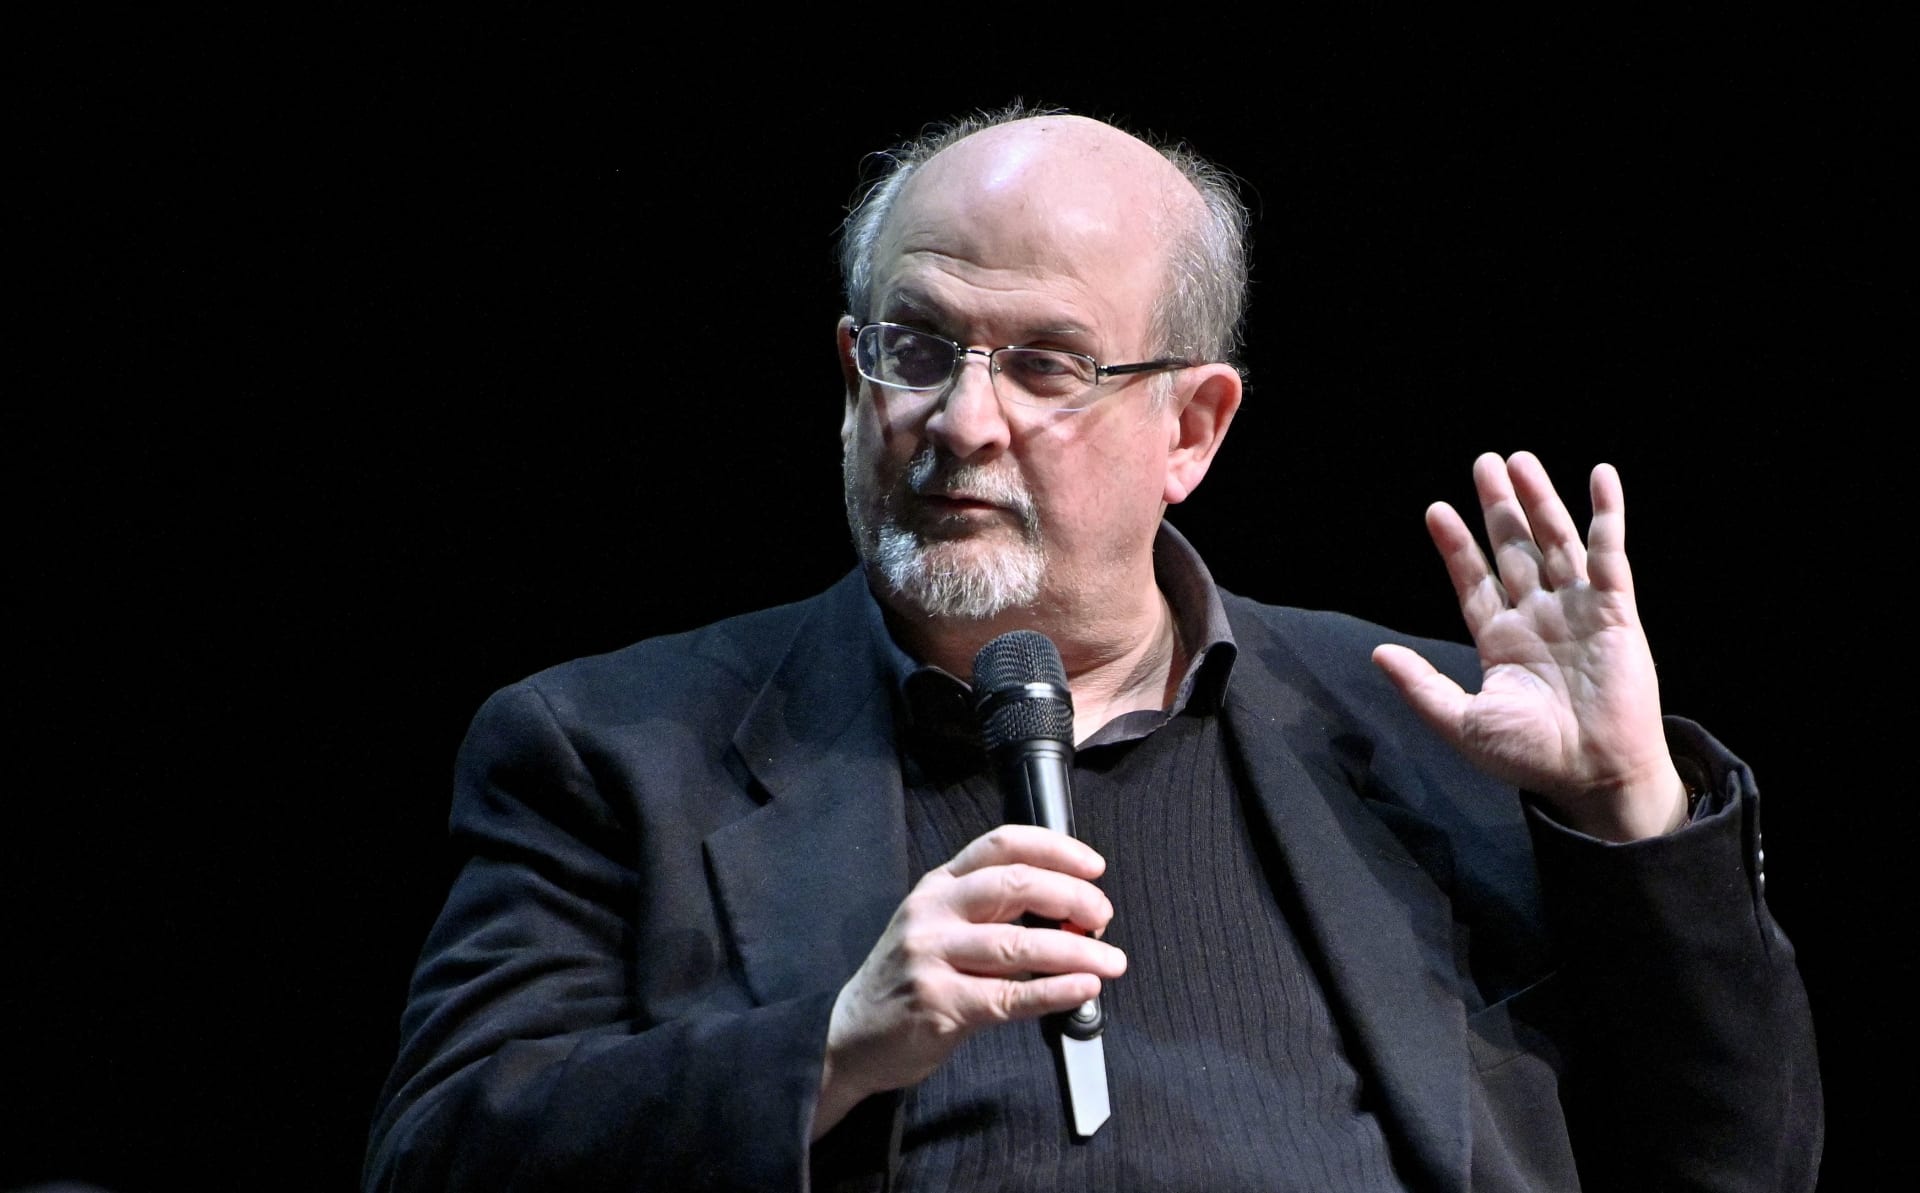 سلمان رشدي مؤلف "آيات شيطانية" يحذر: حرية النشر معرضة للخطر